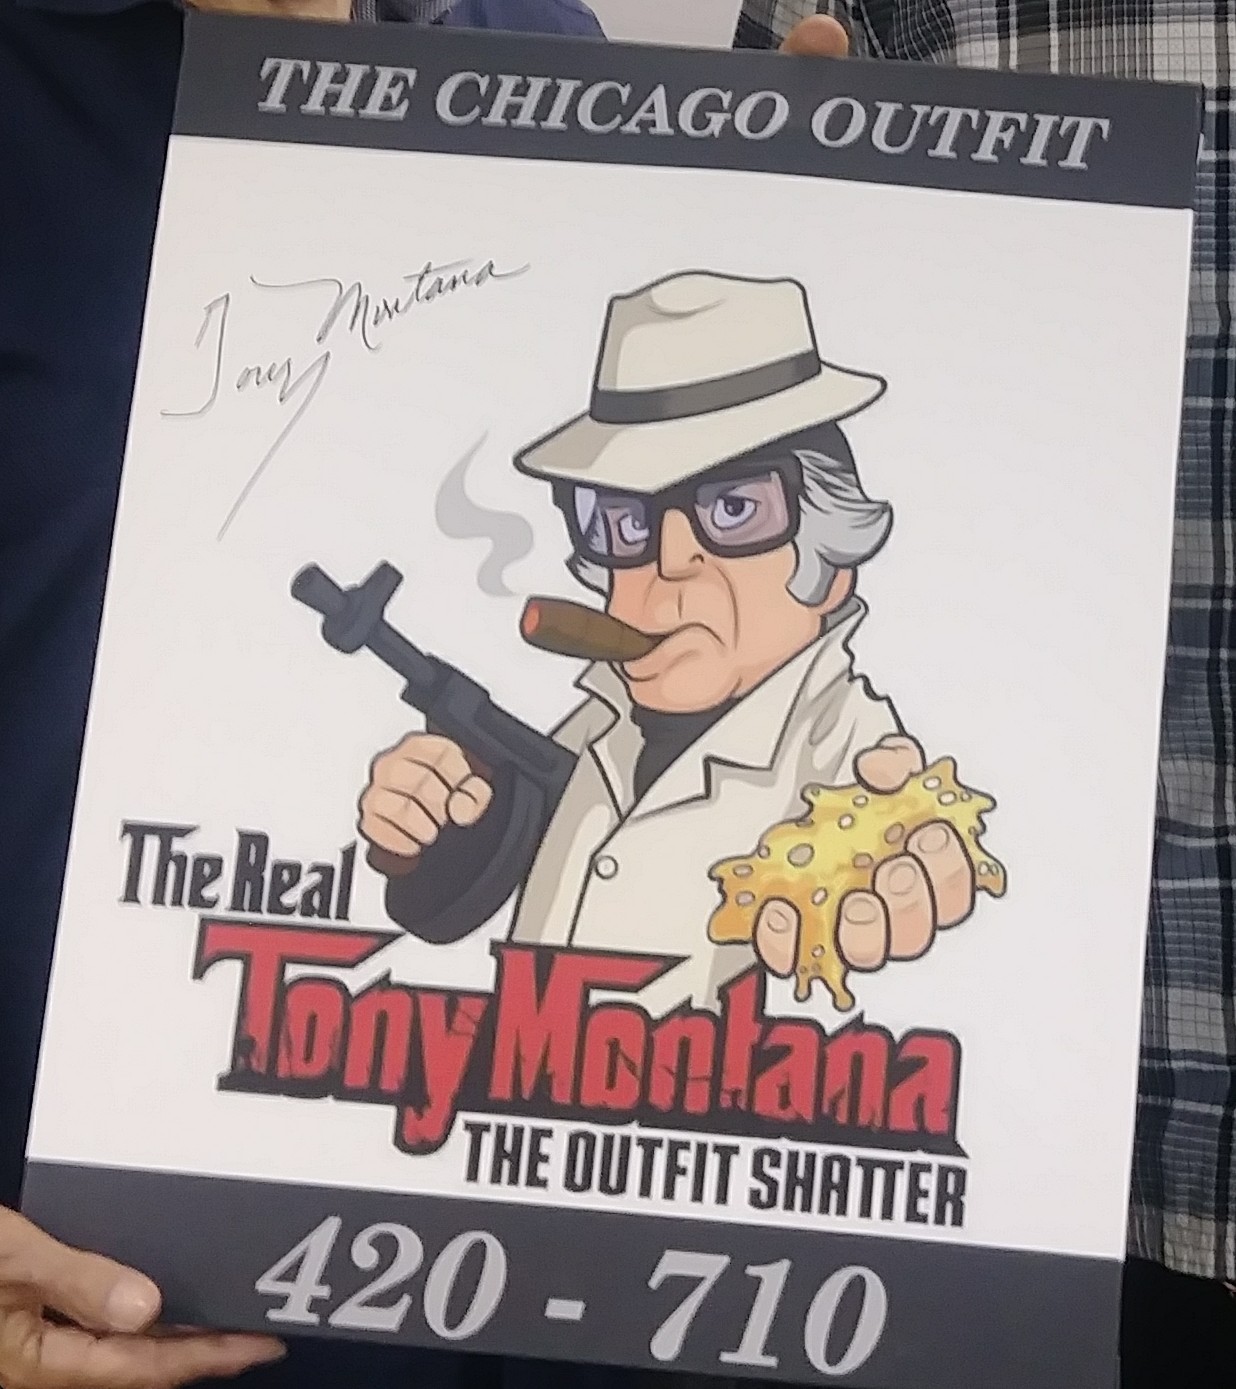 The Real Tony Montana signed canvas